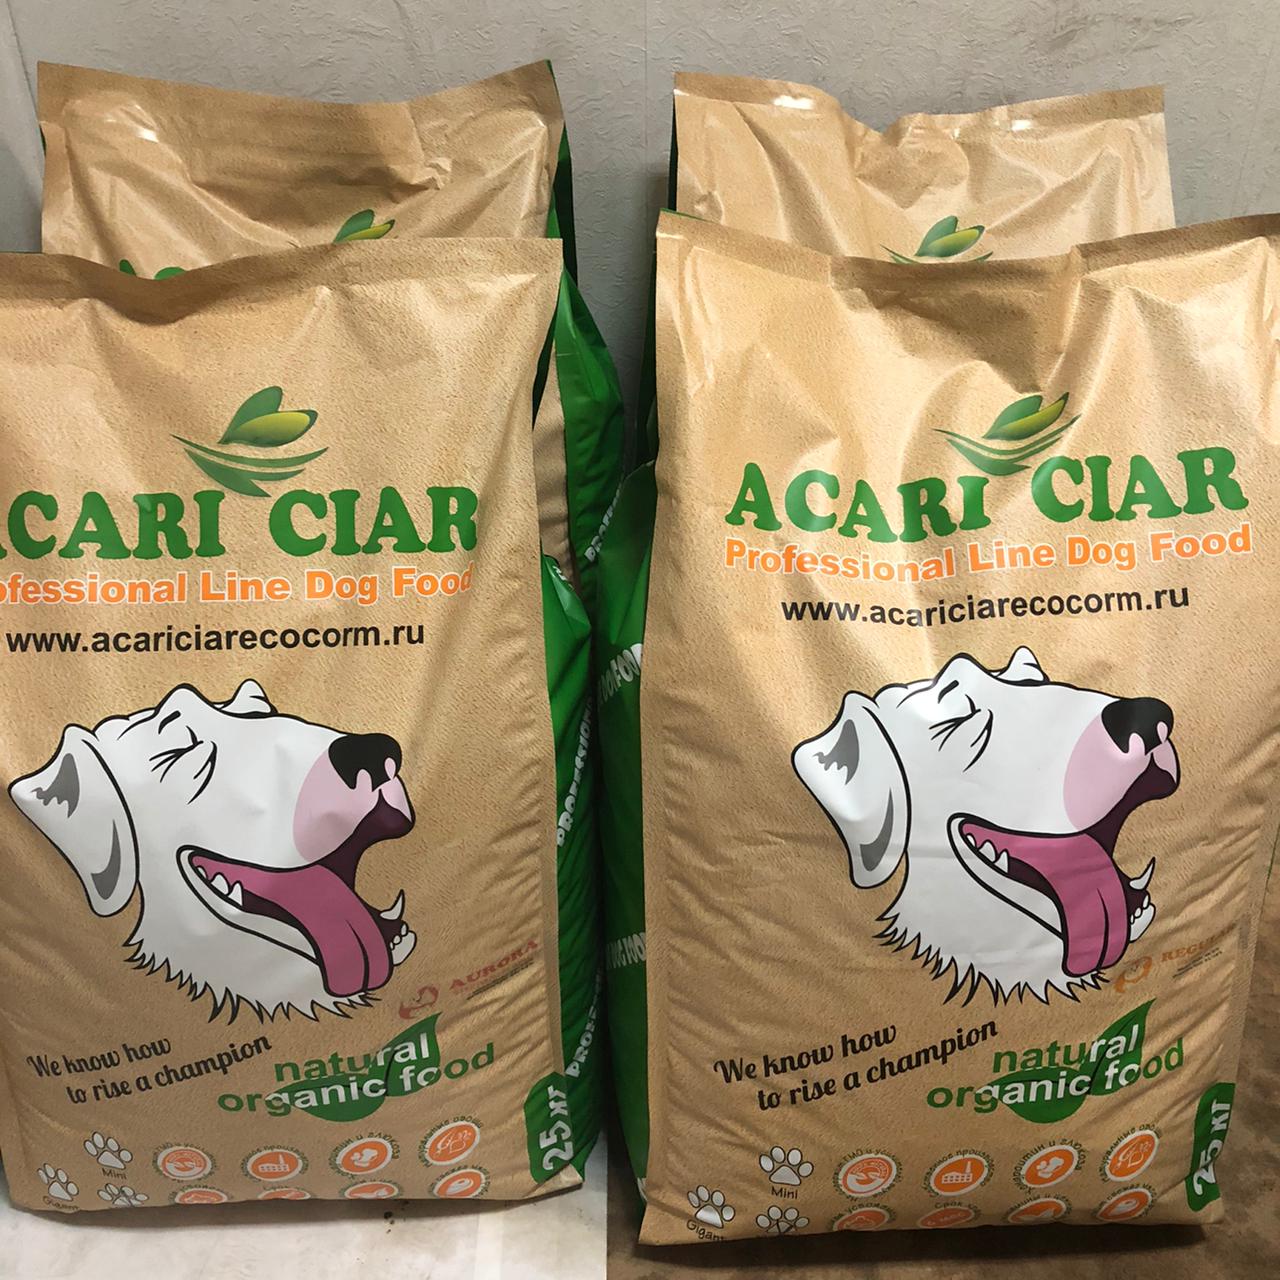 Корм акари киар купить. Корм Акари Киар для собак. Acari Ciar корм для собак гипоаллергенный. Корм для собак Акари Киар для щенков. Корм Акари Киар 25 кг.